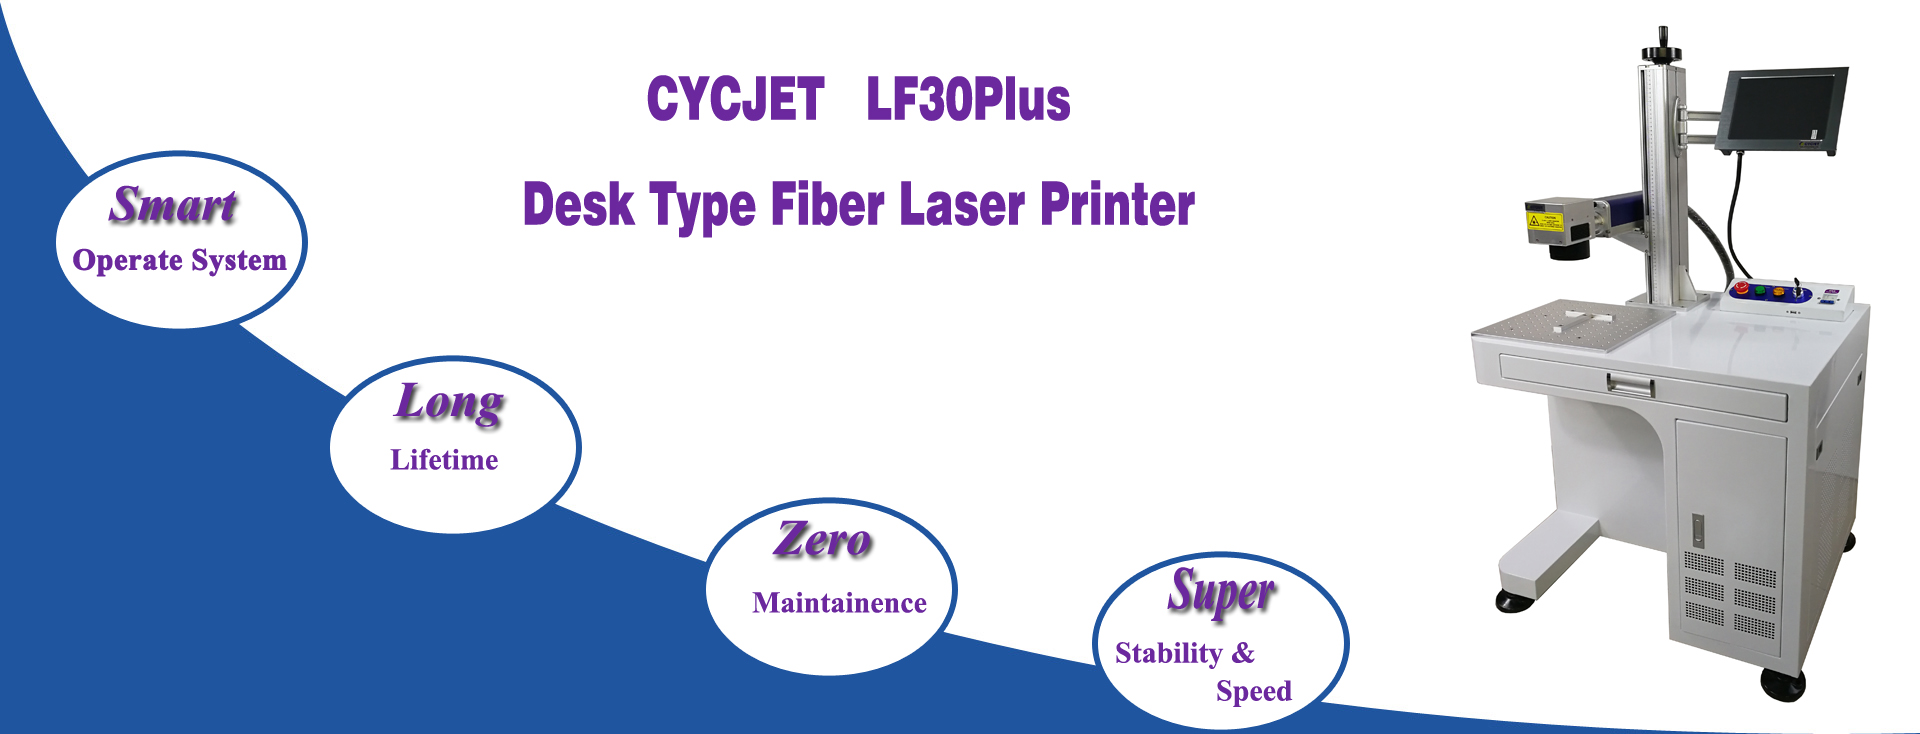 Details of CYCJET Desk Type Laser Marker LF30PLUS.jpg